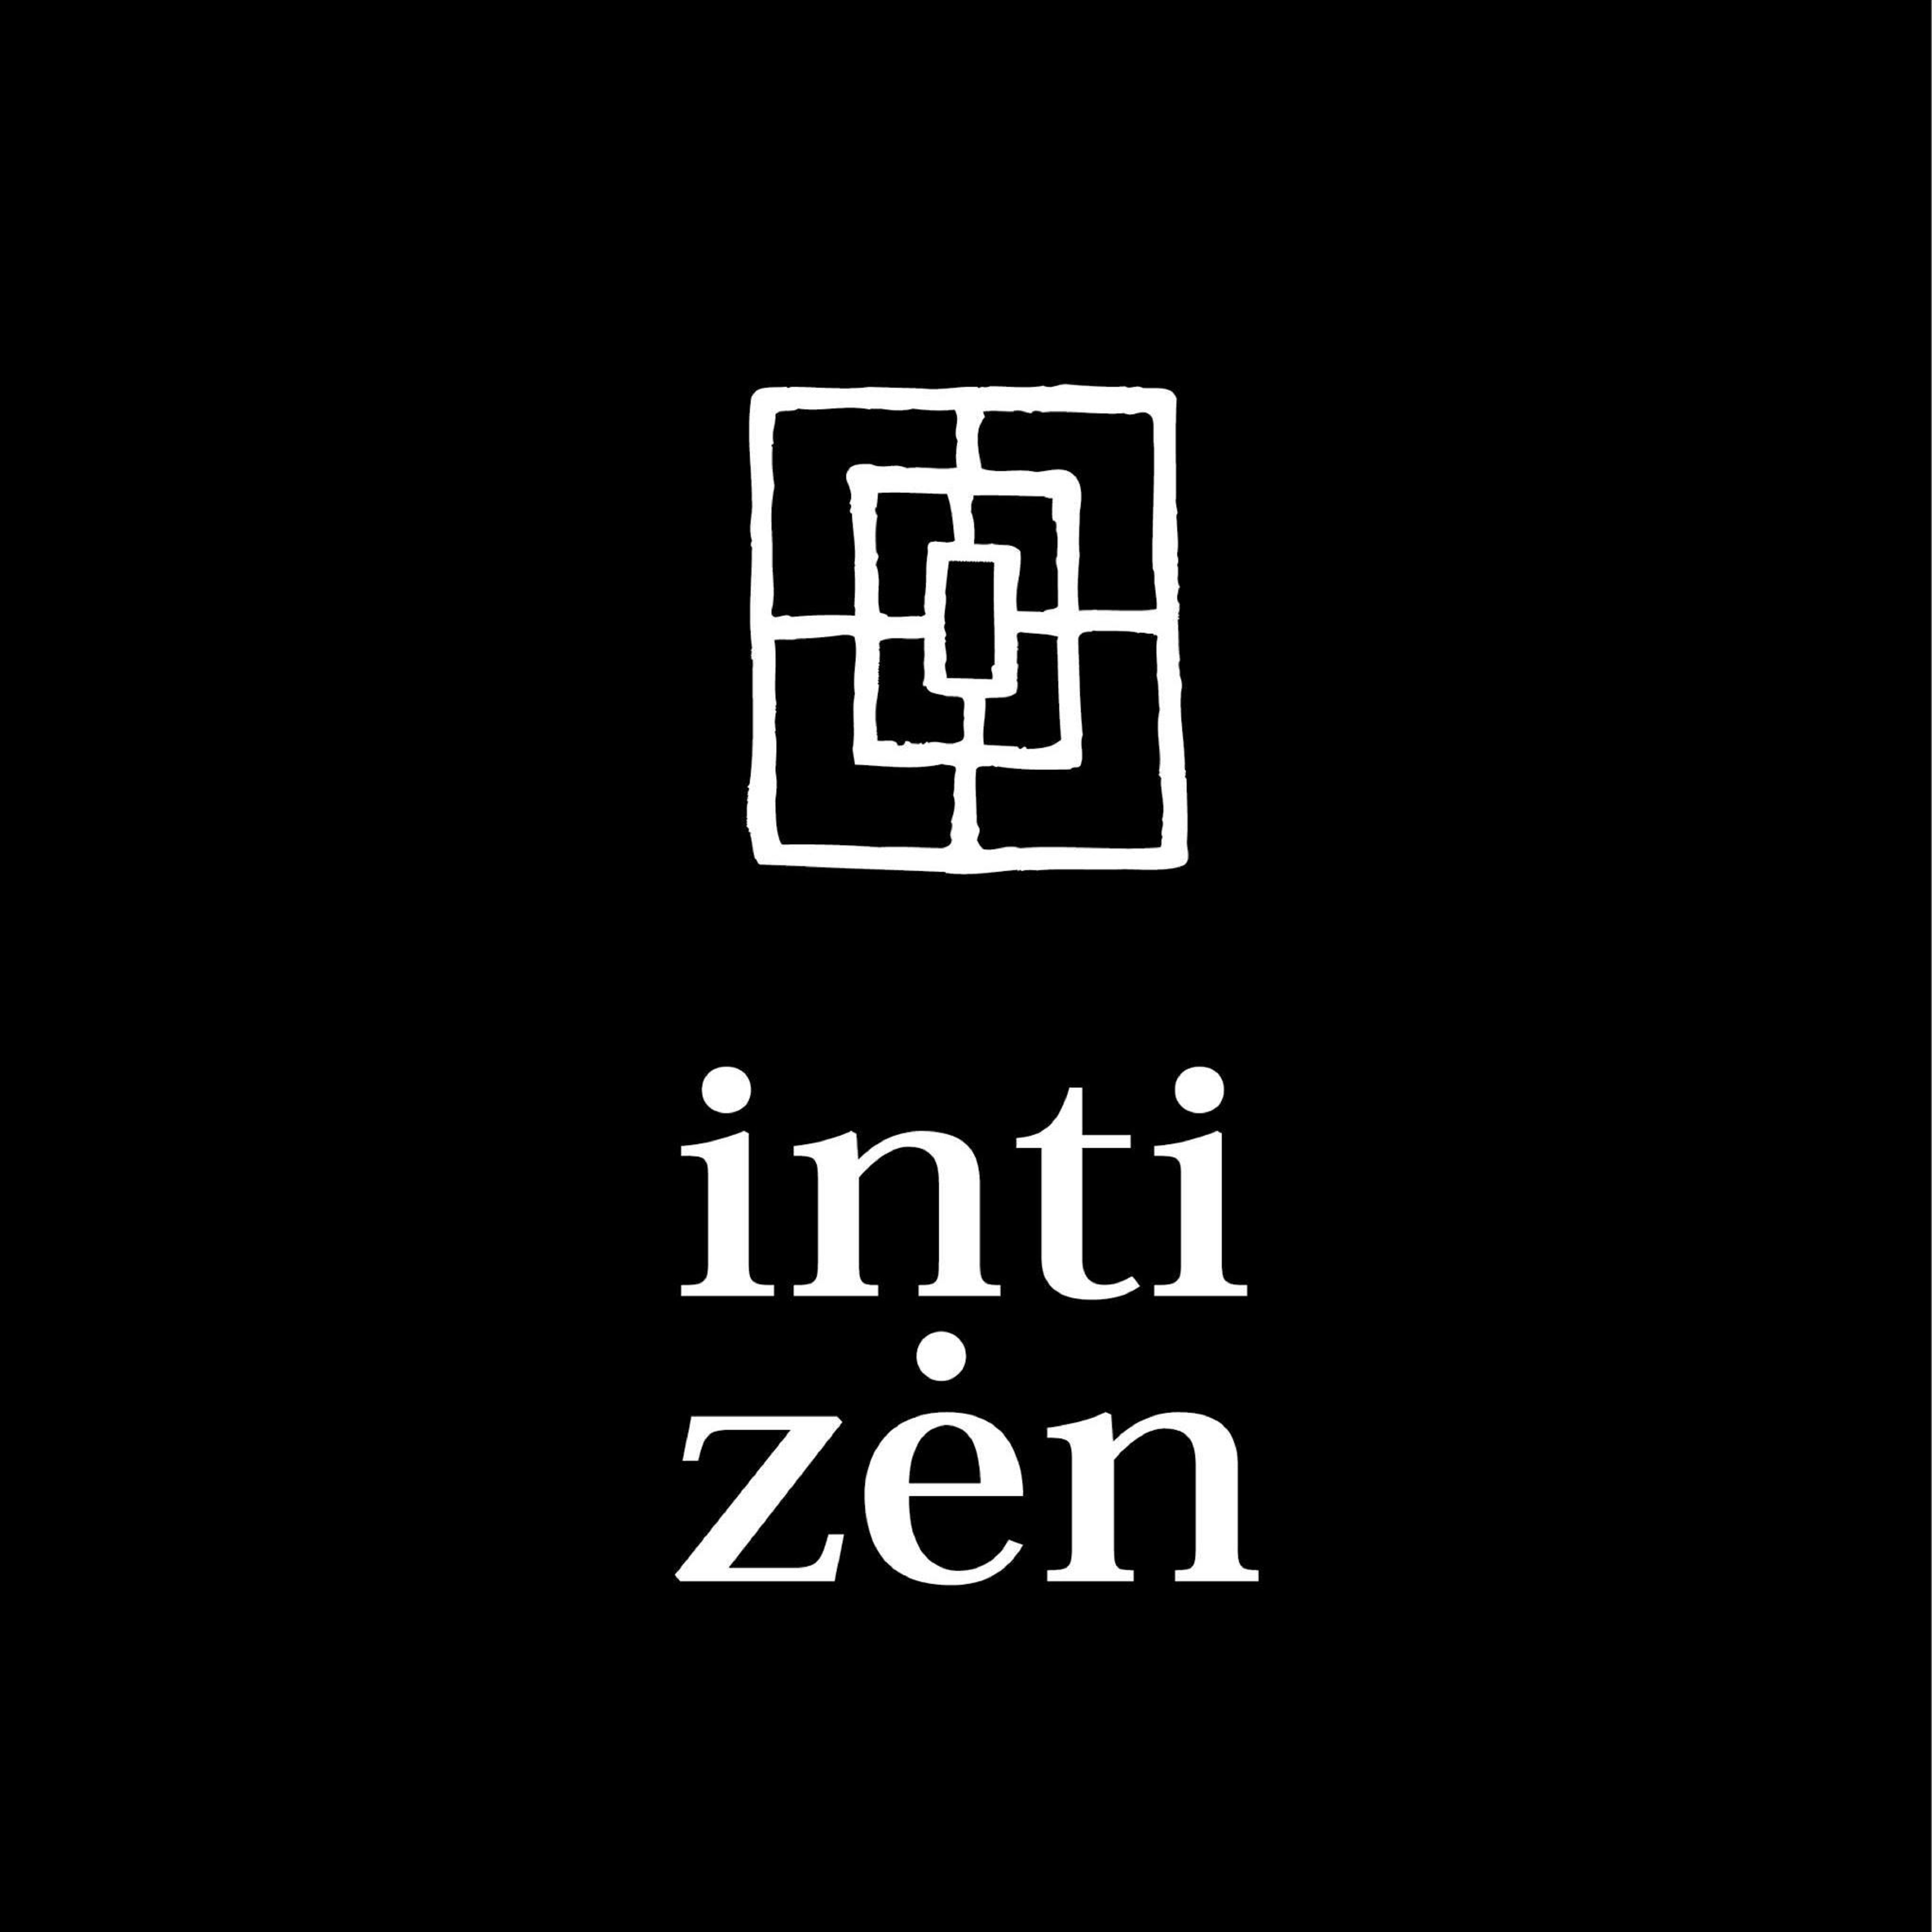 Inti Zen es una empresa que elabora infusiones de té, hierbas y especias con toques latino.
Cada taza de Inti Zen tiene atributos detoxificantes, relajantes, digestivas, energizante o revitalizantes. Su compromiso es crear infusiones ricas, que promuevan el bienestar y la salud.